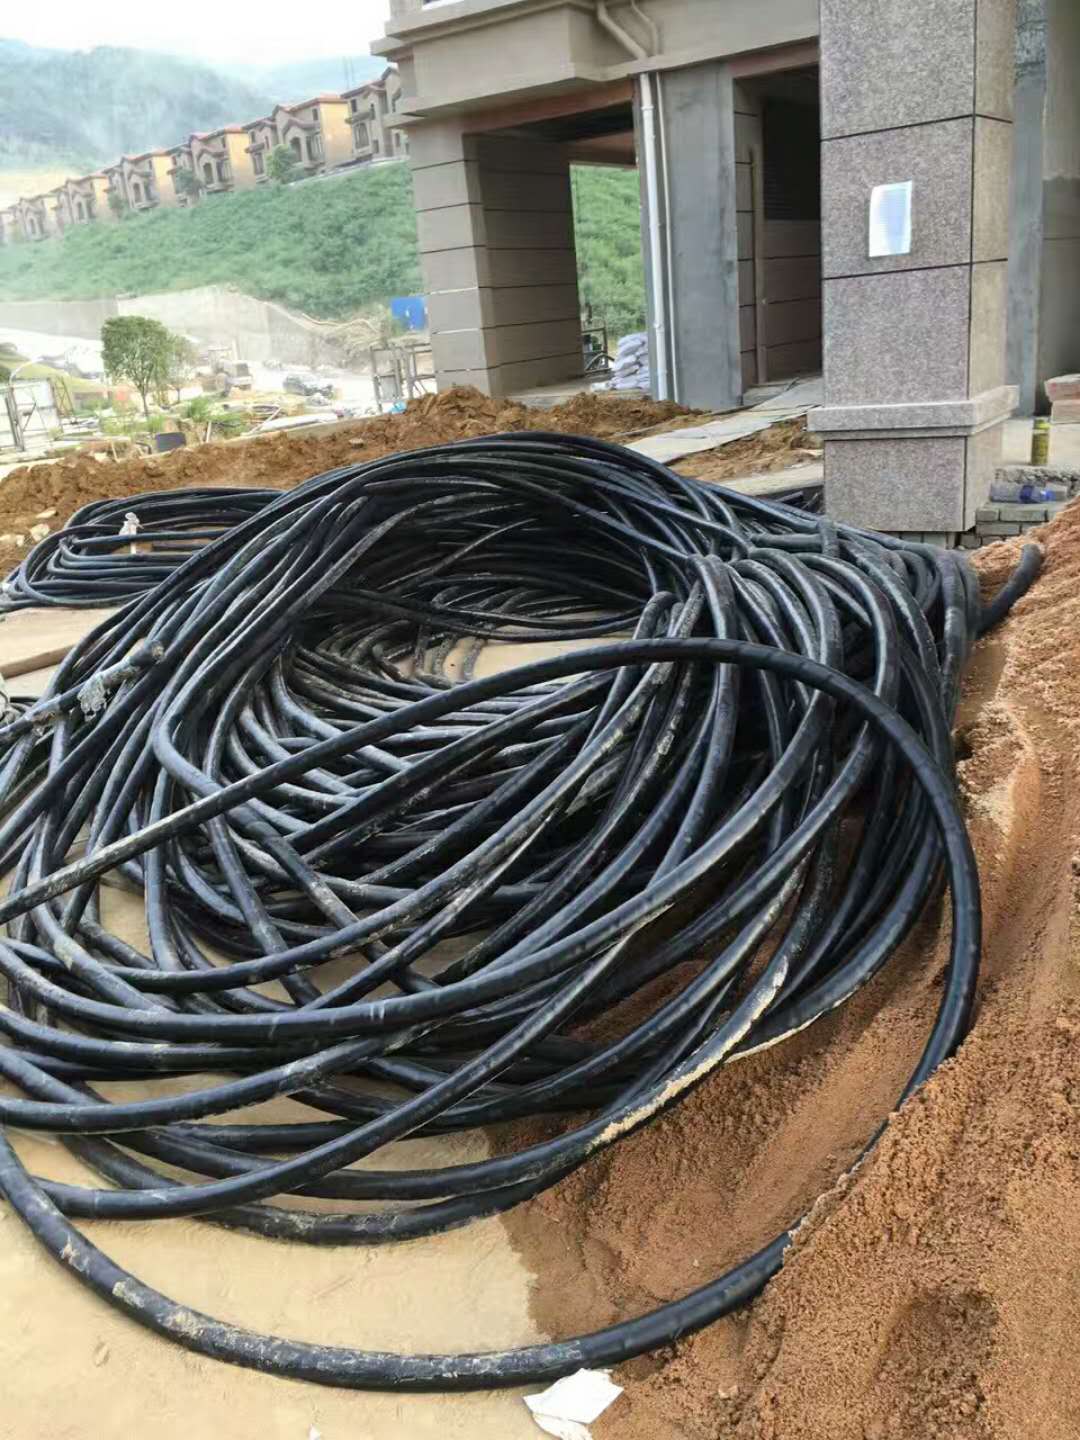 保定市乌海废电力电缆回收价格厂家乌海废电缆回收今日价格 乌海废电力电缆回收价格 厂家报价